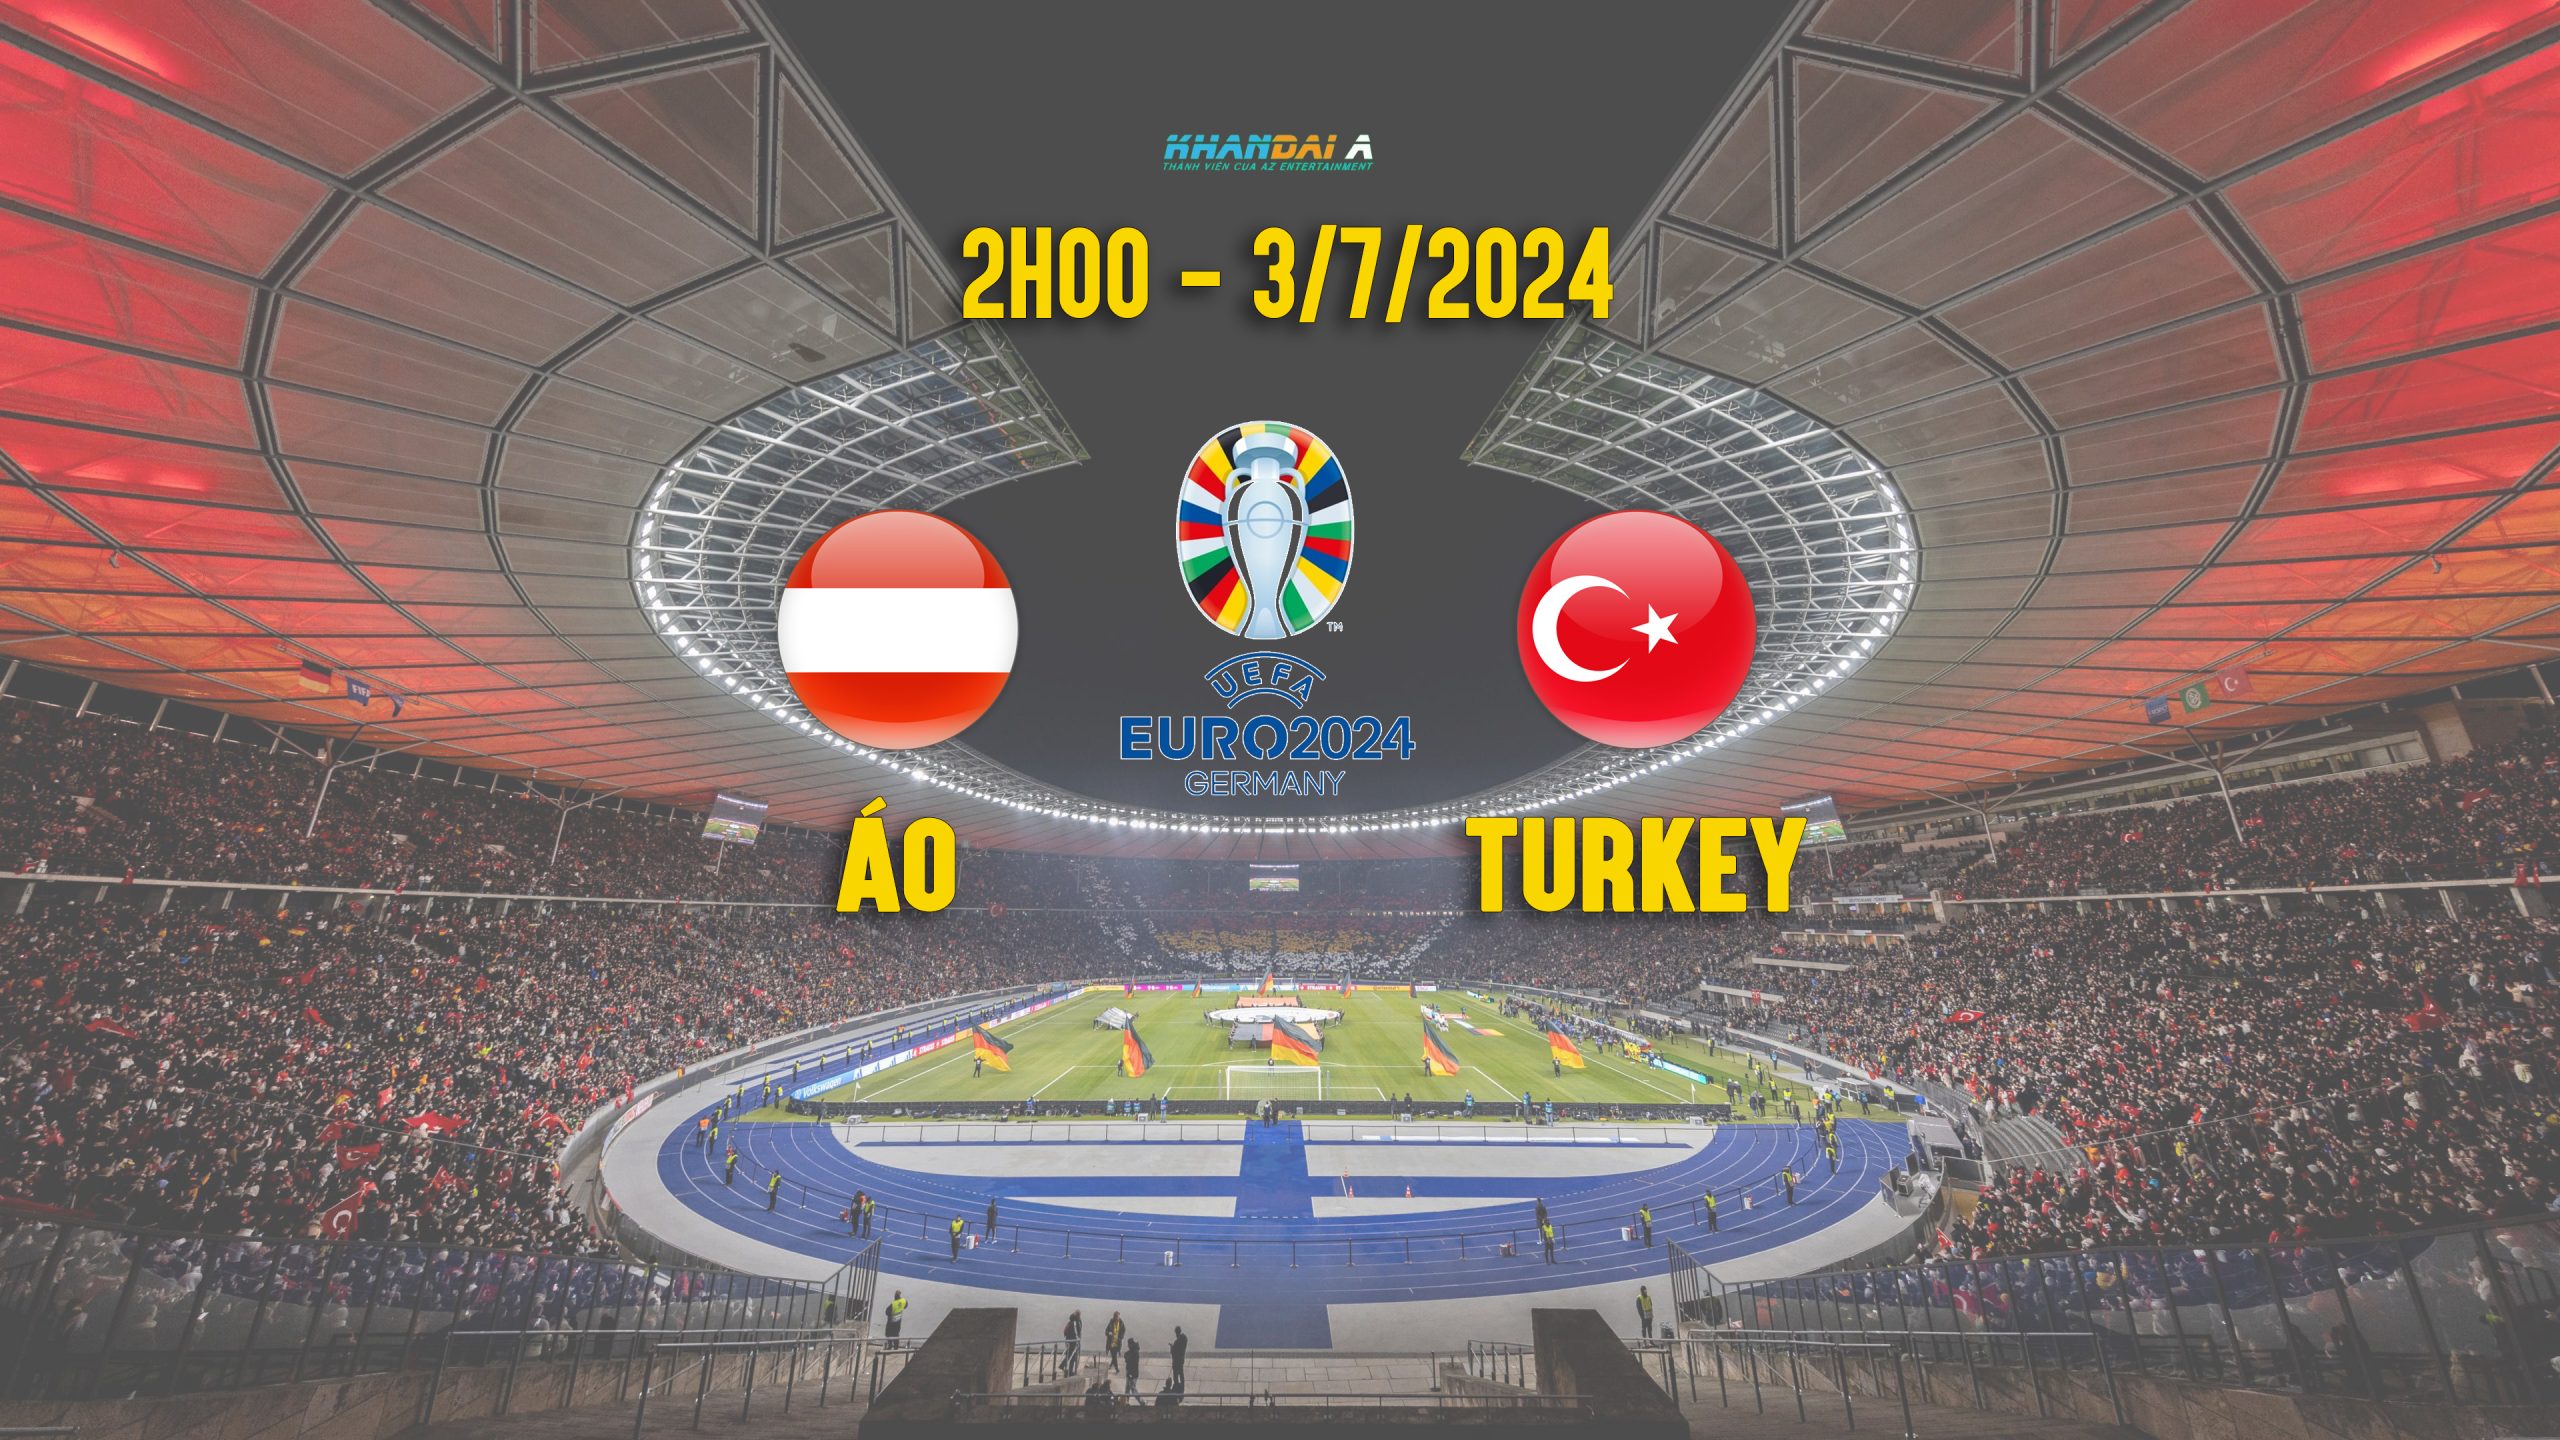 trực tiếp Áo vs Thổ Nhĩ Kỳ euro 2024